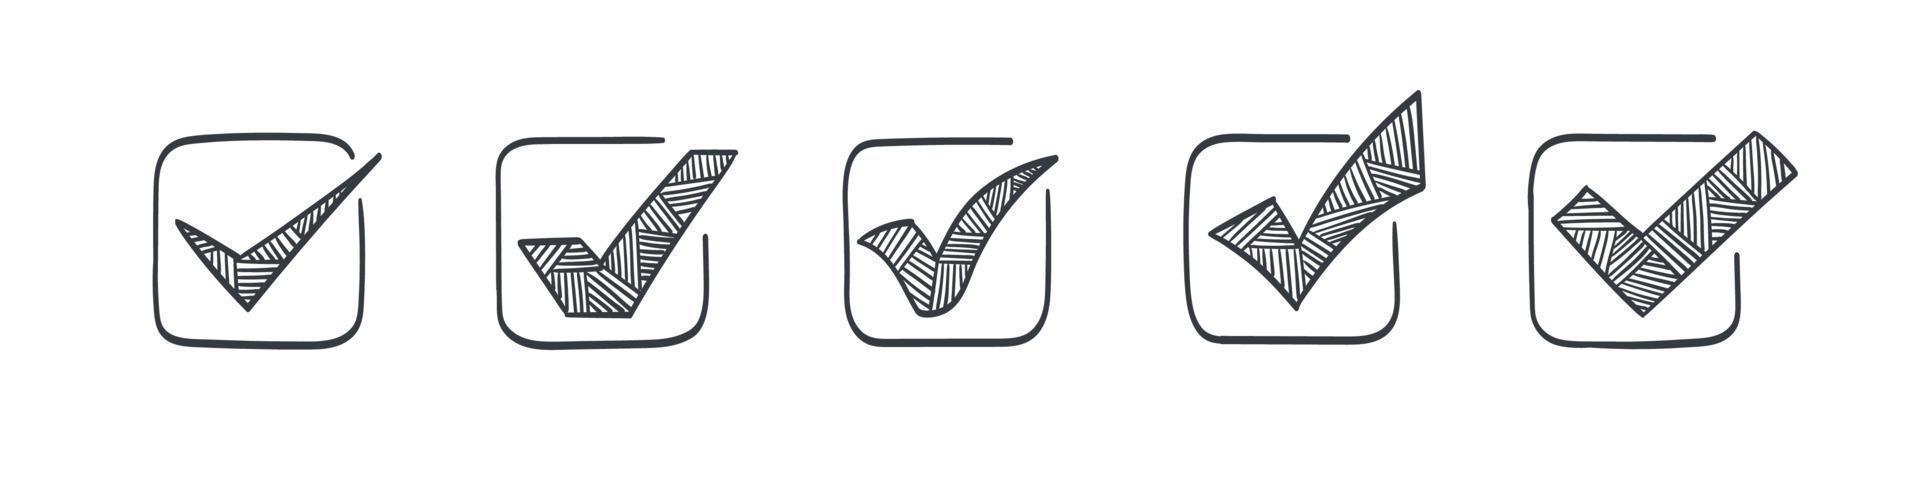 Häkchen-Symbole gesetzt. gezeichnete Symbole der Häkchen. Bestätigungssymbole. Vektor-Illustration vektor